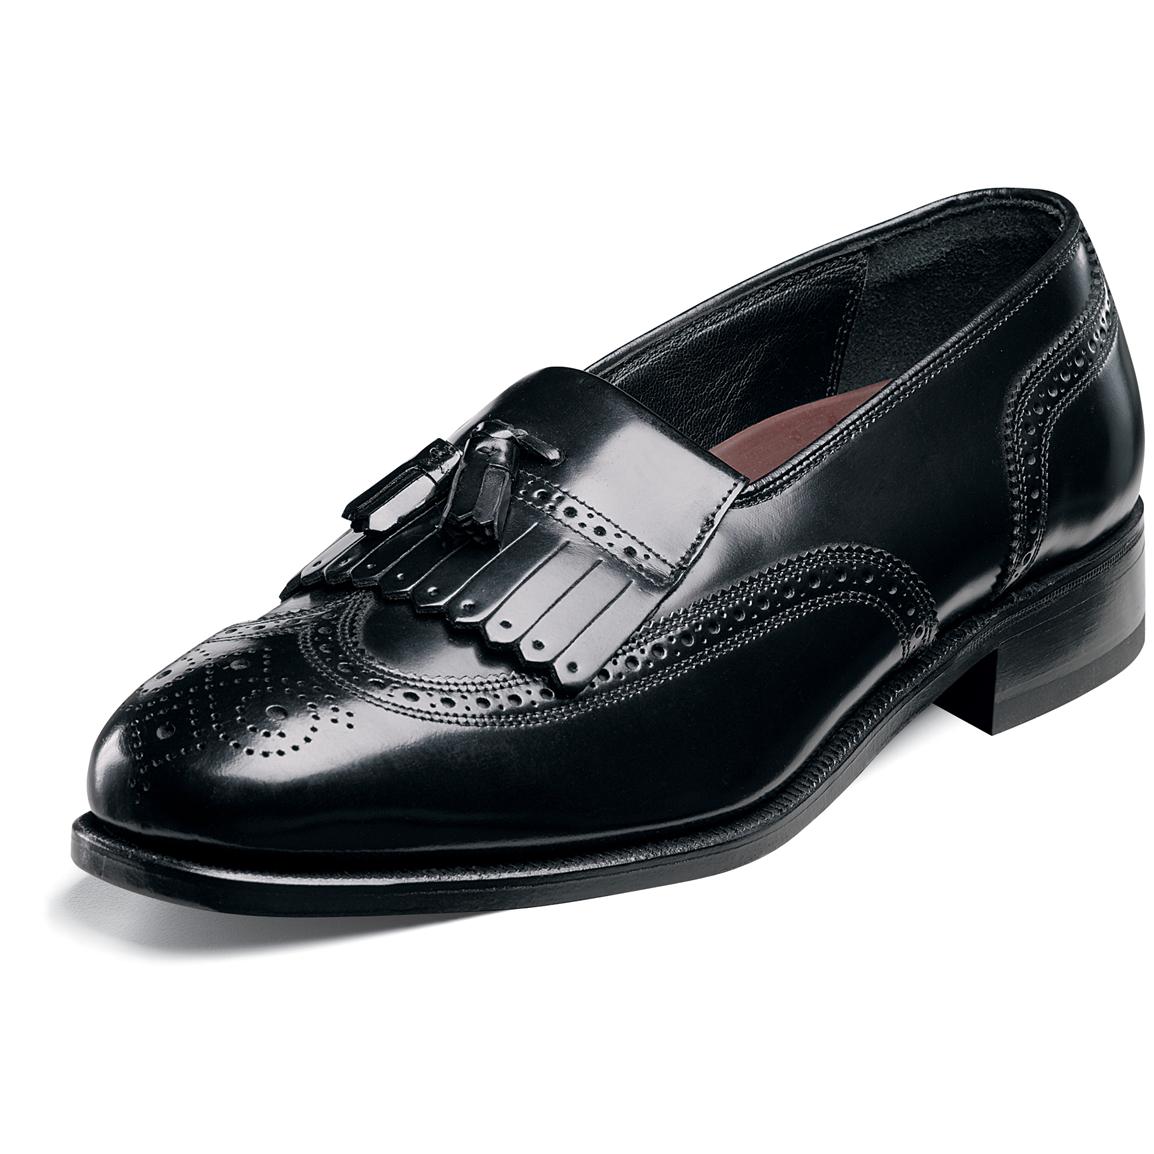 Men&#39;s Florsheim® Kiltie Tasseled Wing Tip Lexington Shoes, Black - 185726, Dress Shoes at ...